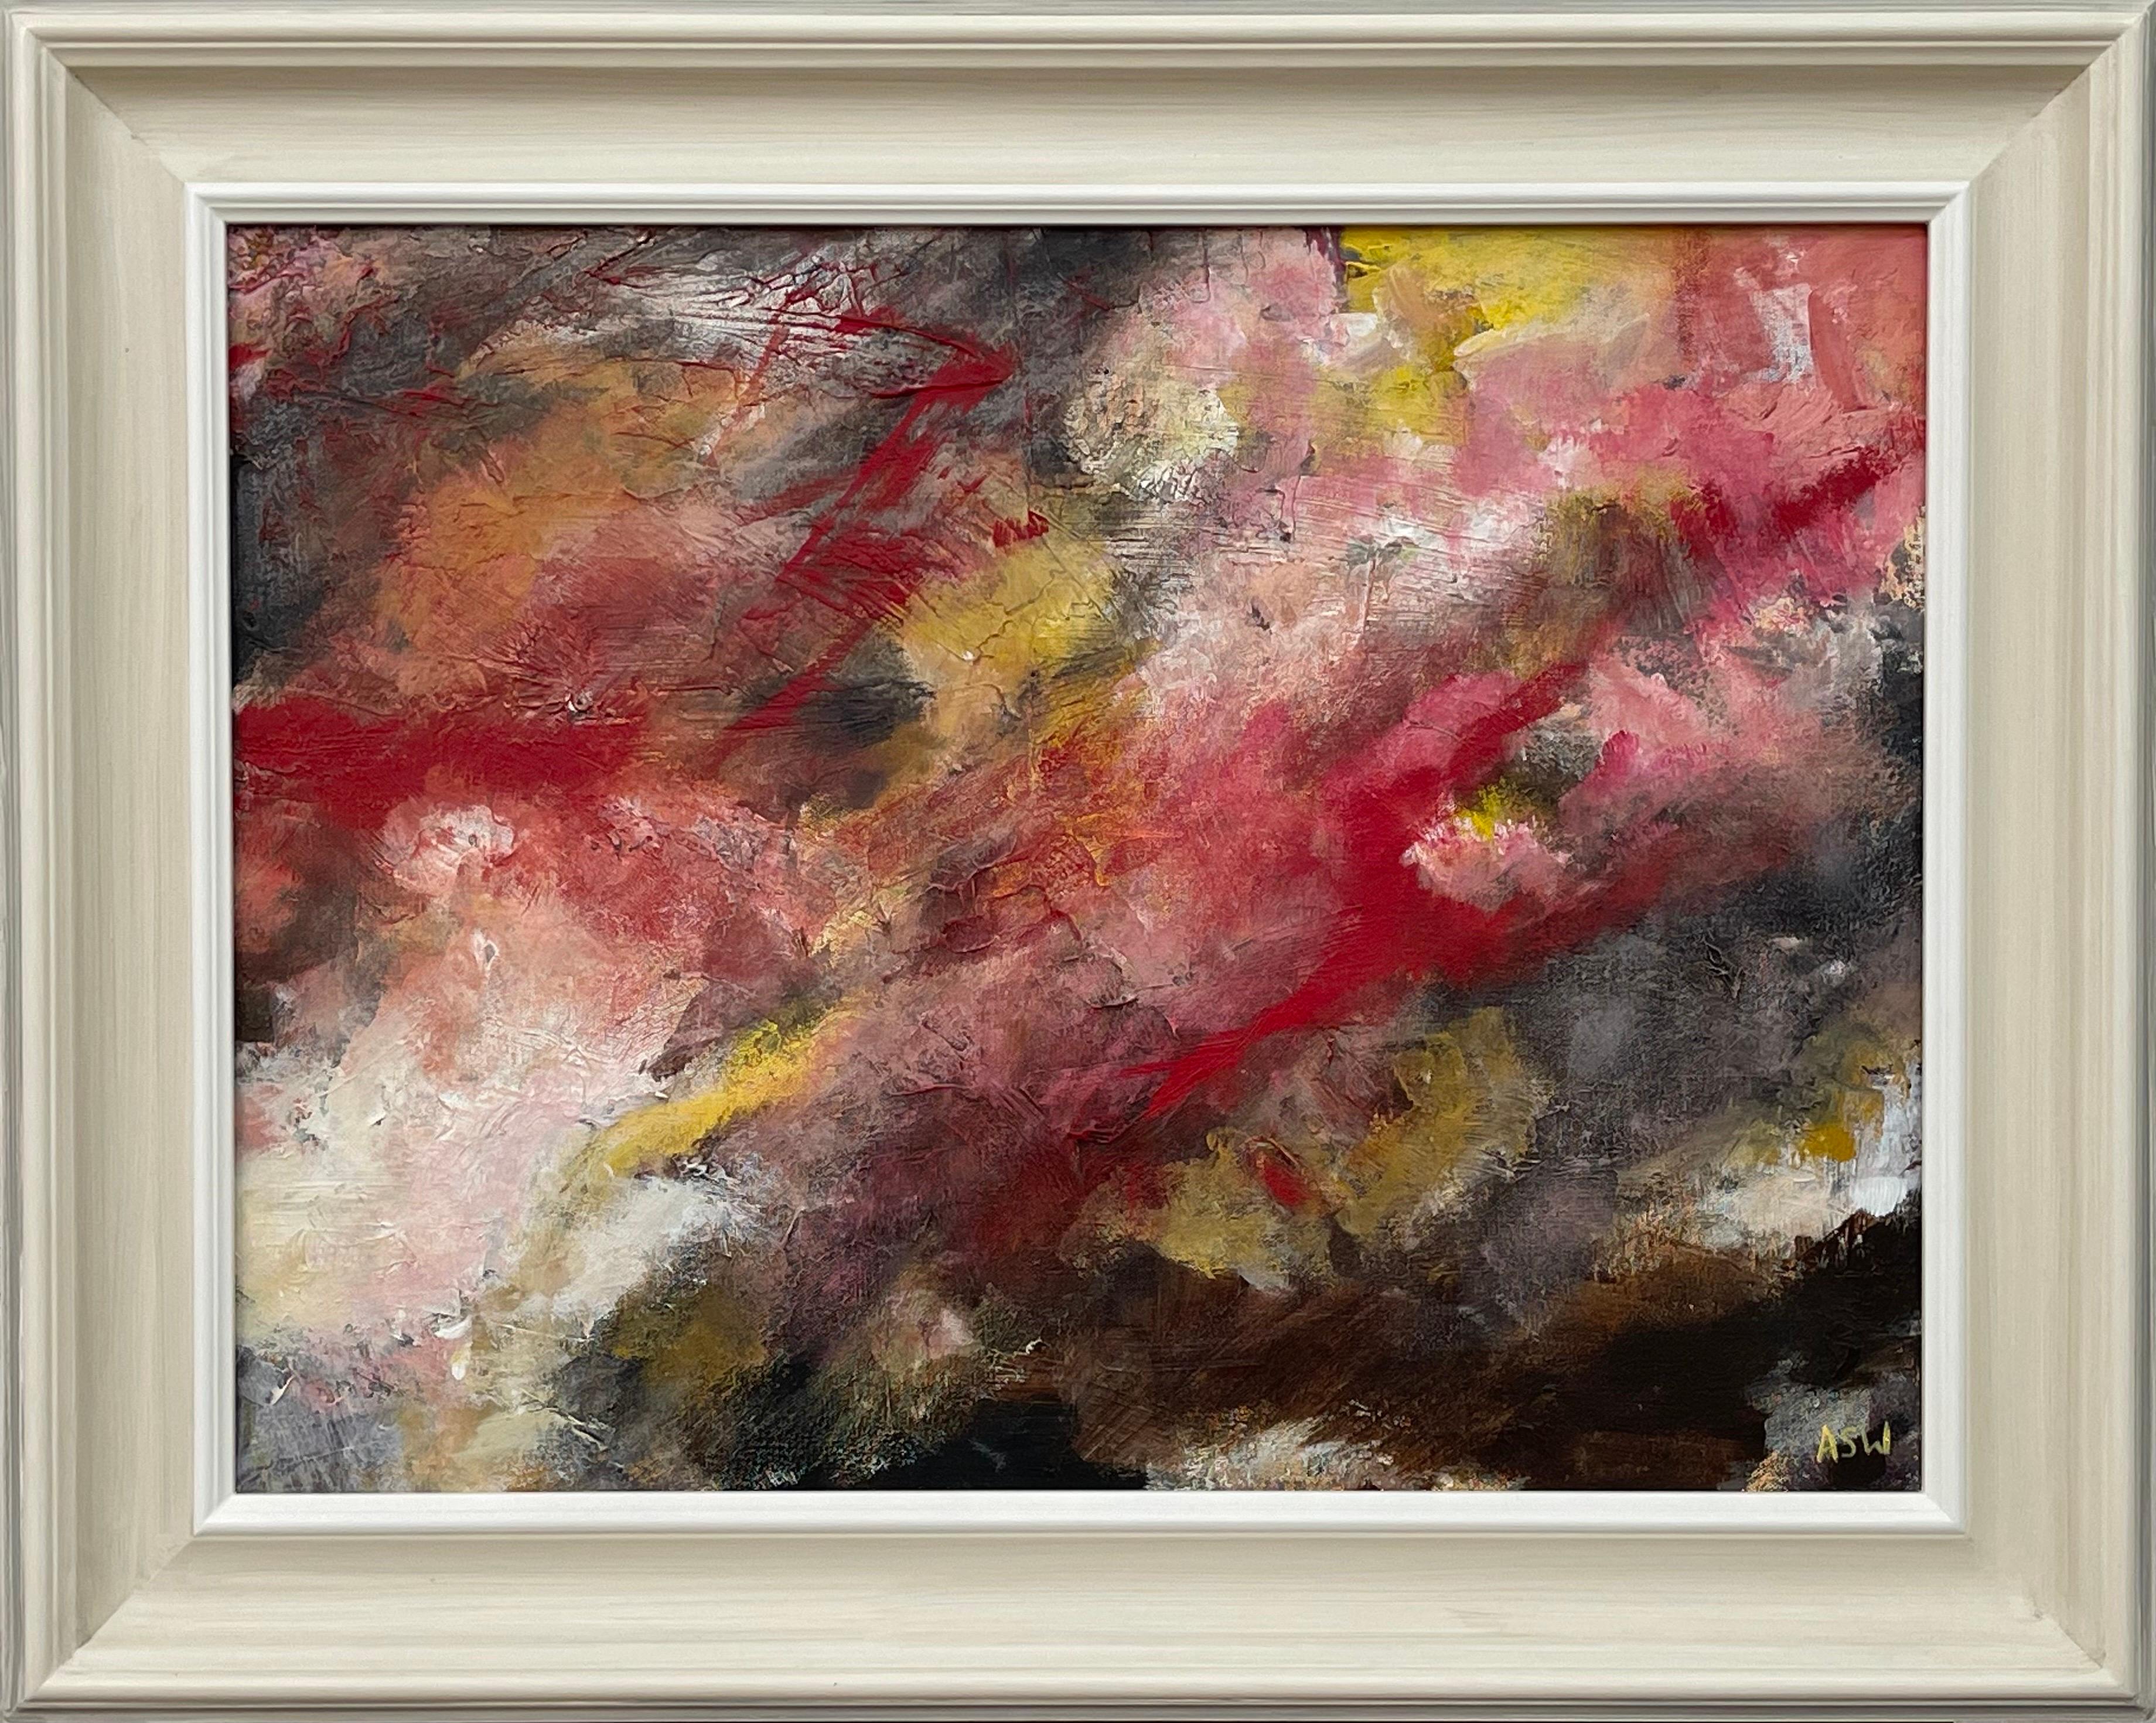 Abstract Painting Angela Wakefield - Paysage abstrait utilisant le rouge, le noir et le jaune d'un artiste britannique contemporain